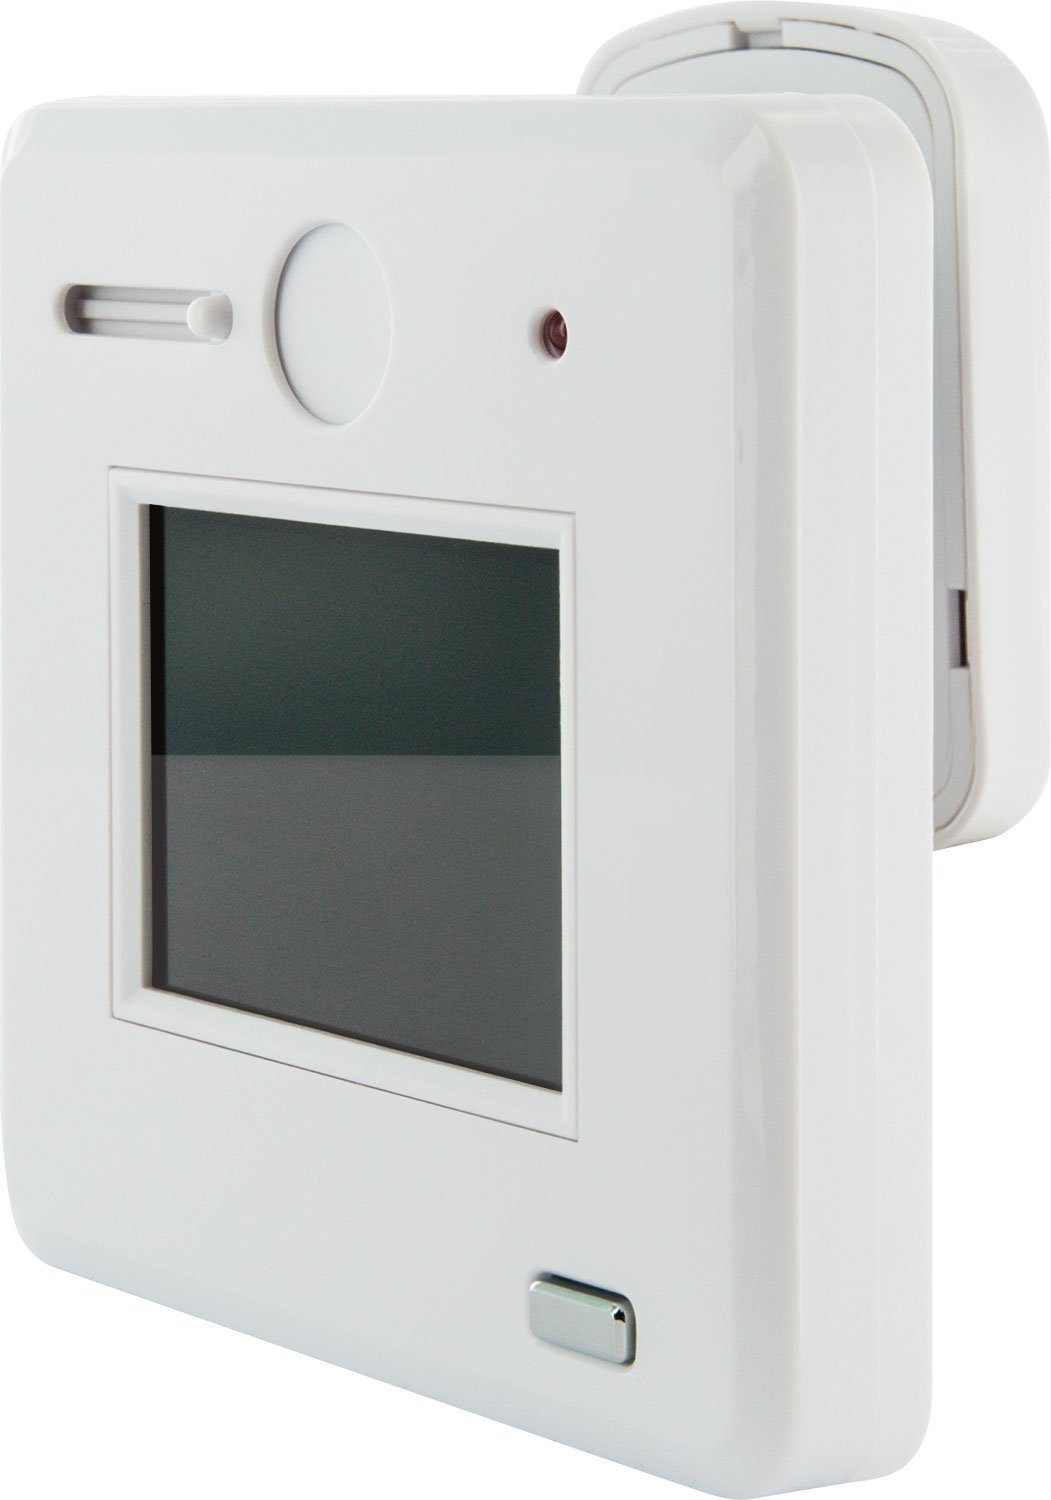 Schwaiger TS100 532 Digitaler Türspion (Innenbereich, Digitaler und optischer Türspion, Zuverlässiger Schutz vor unerwünschten Besuchern, Guckloch mit Display)